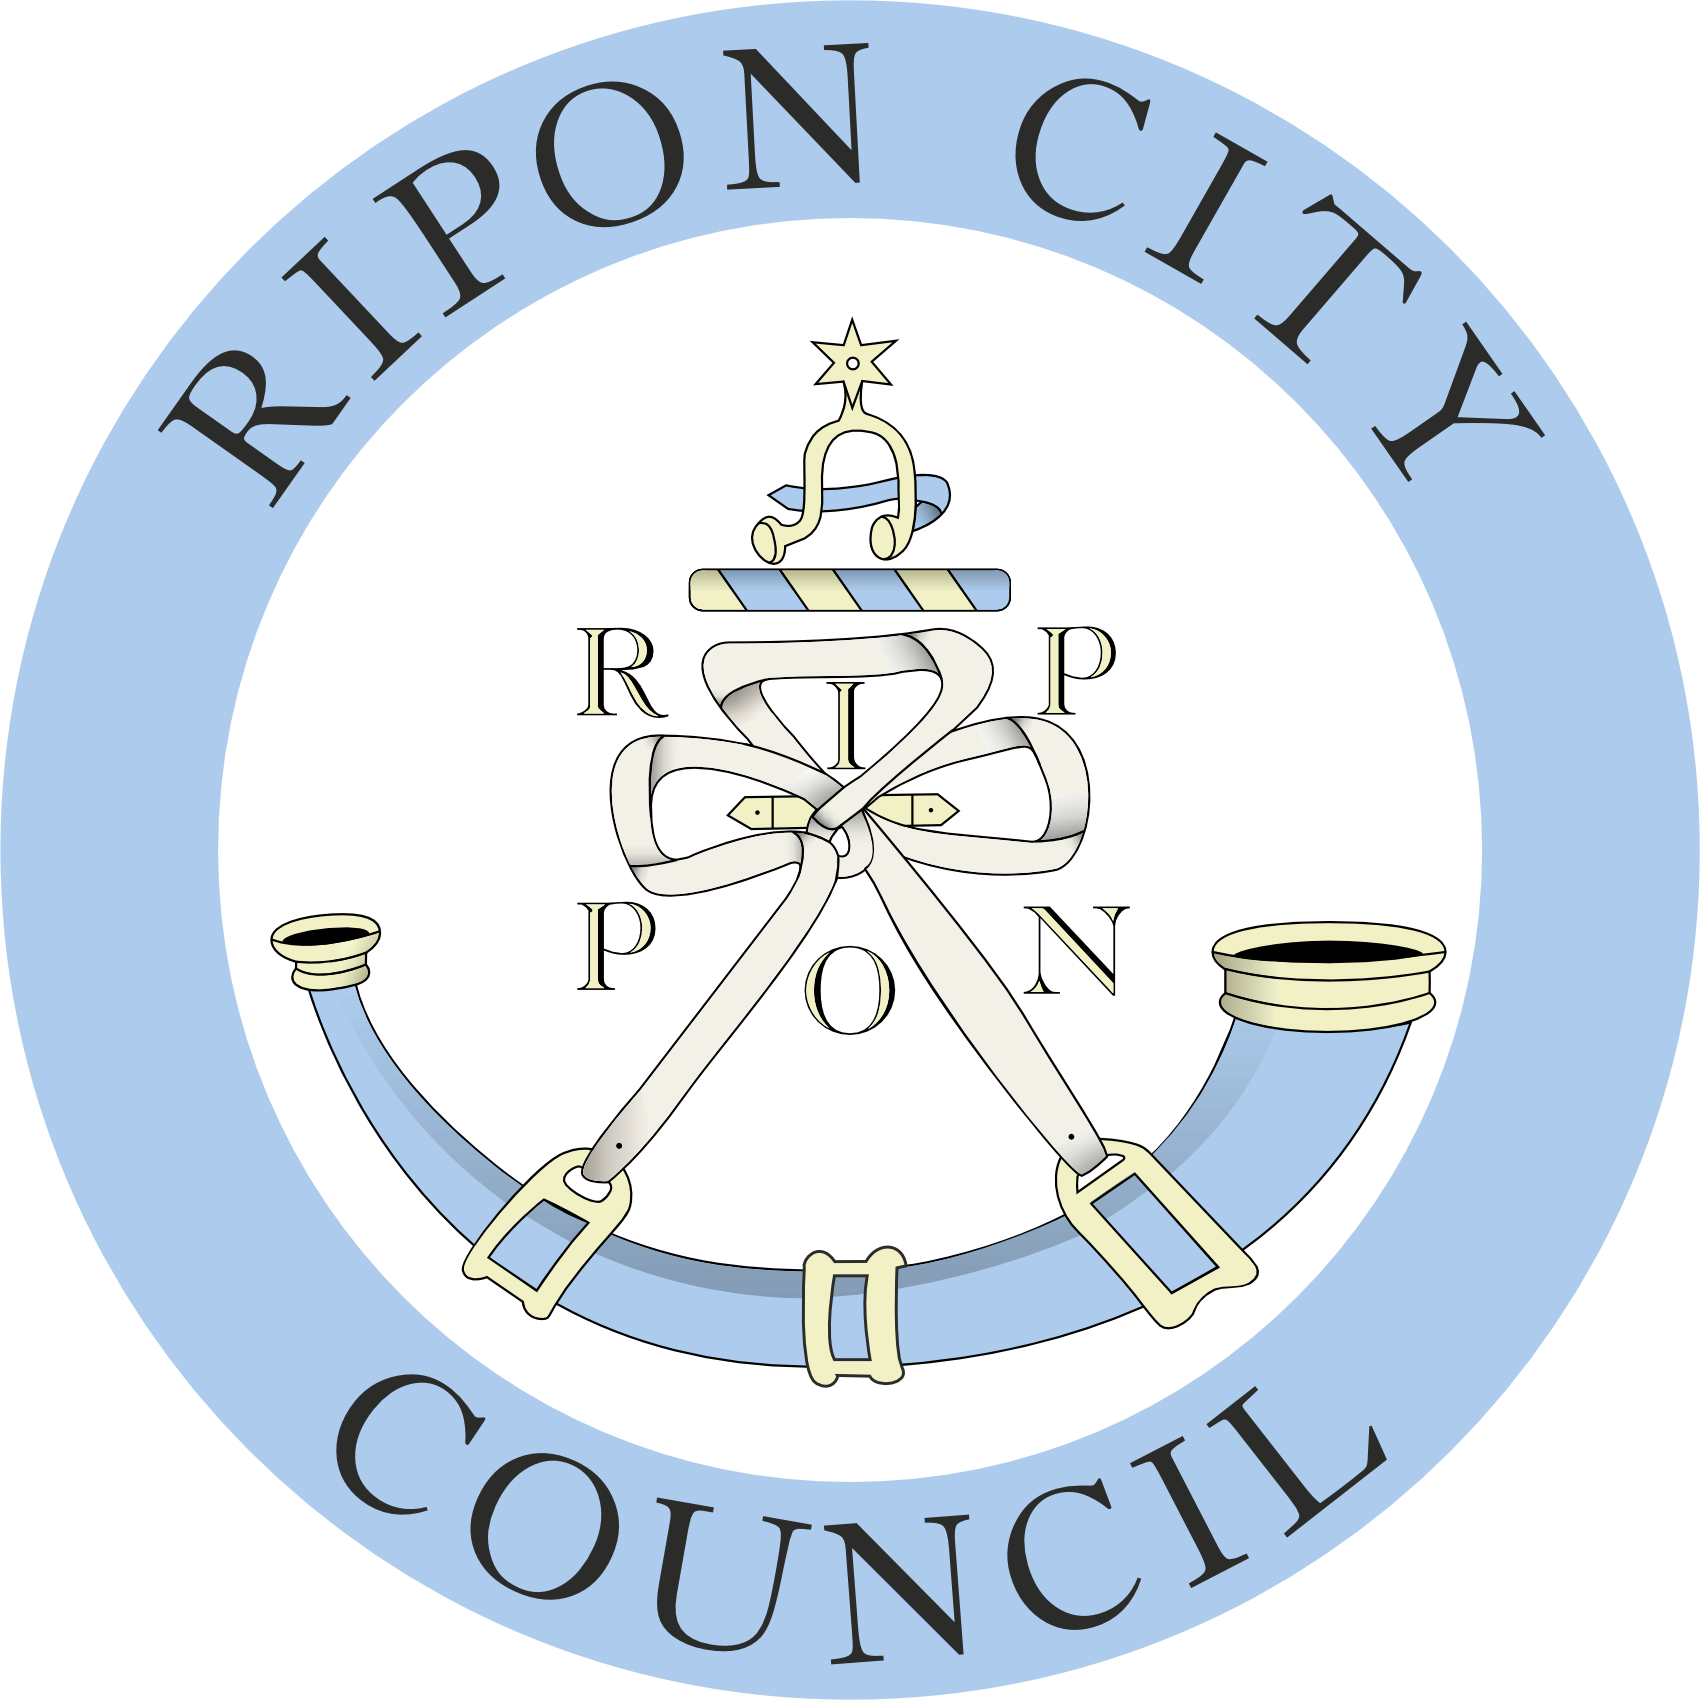 RCC Logo